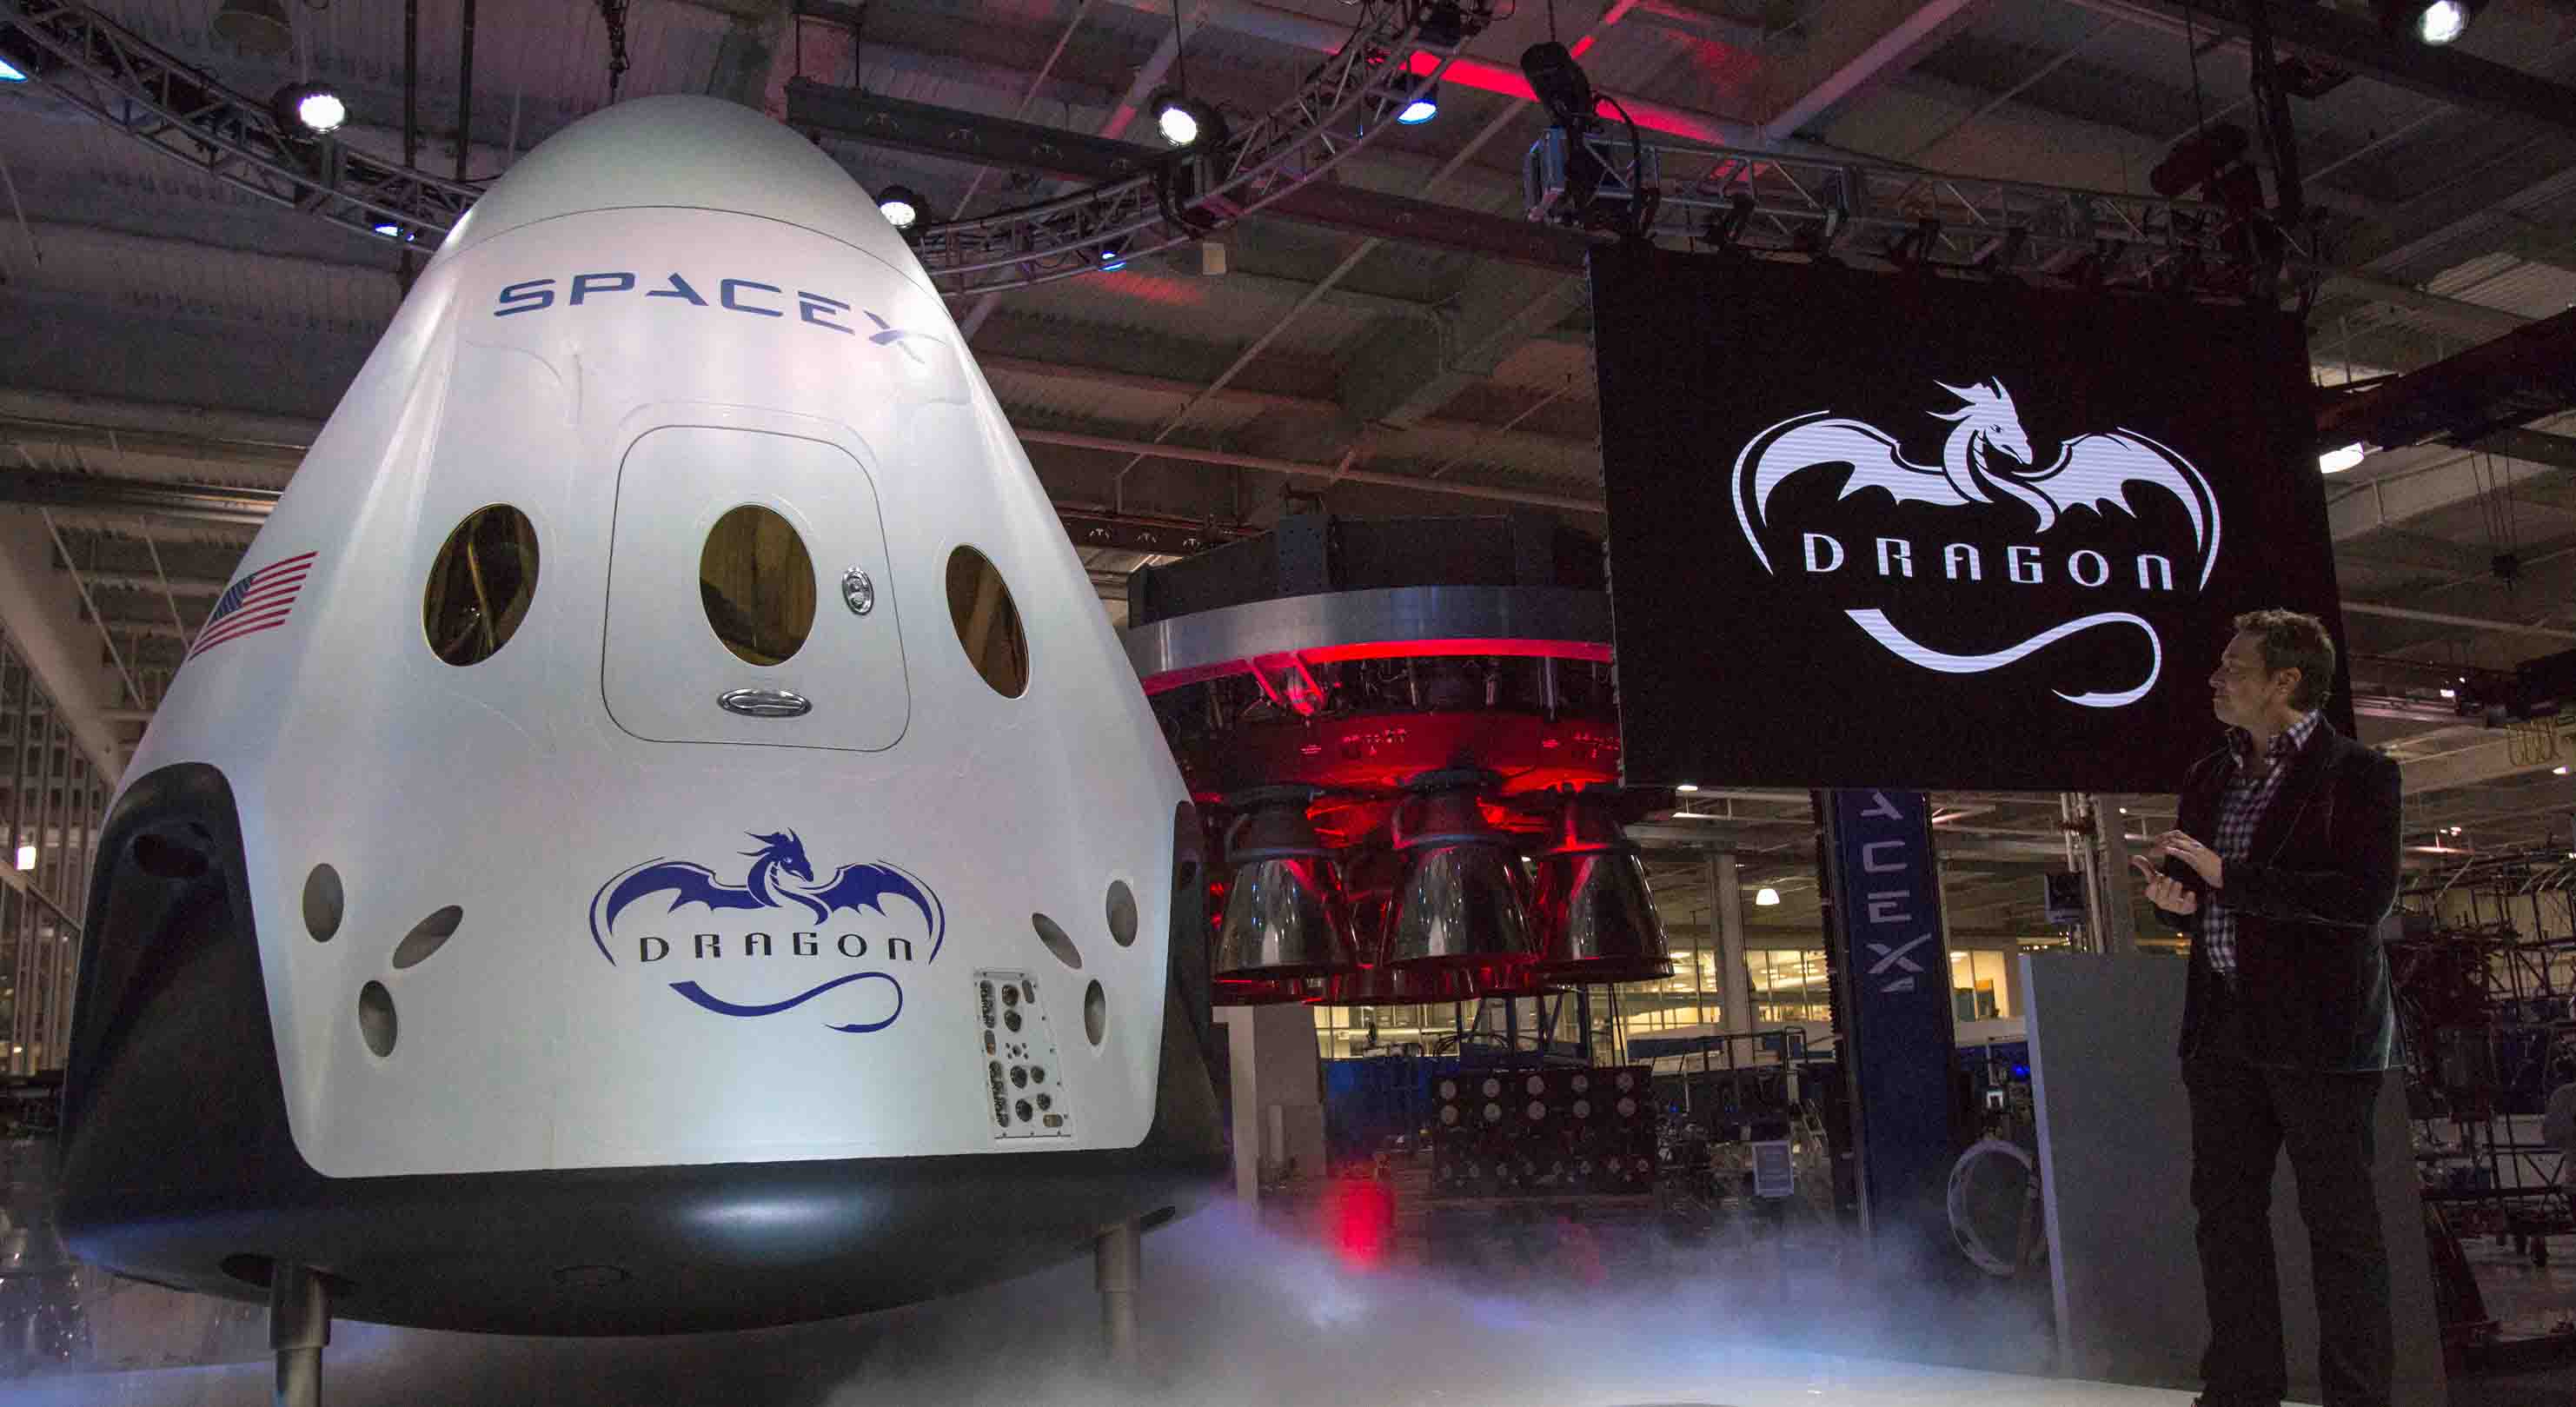 El primer viaje tripulado en más de cuarenta años se llevaría a cabo en 2018 a bordo de la nave "Dragon"